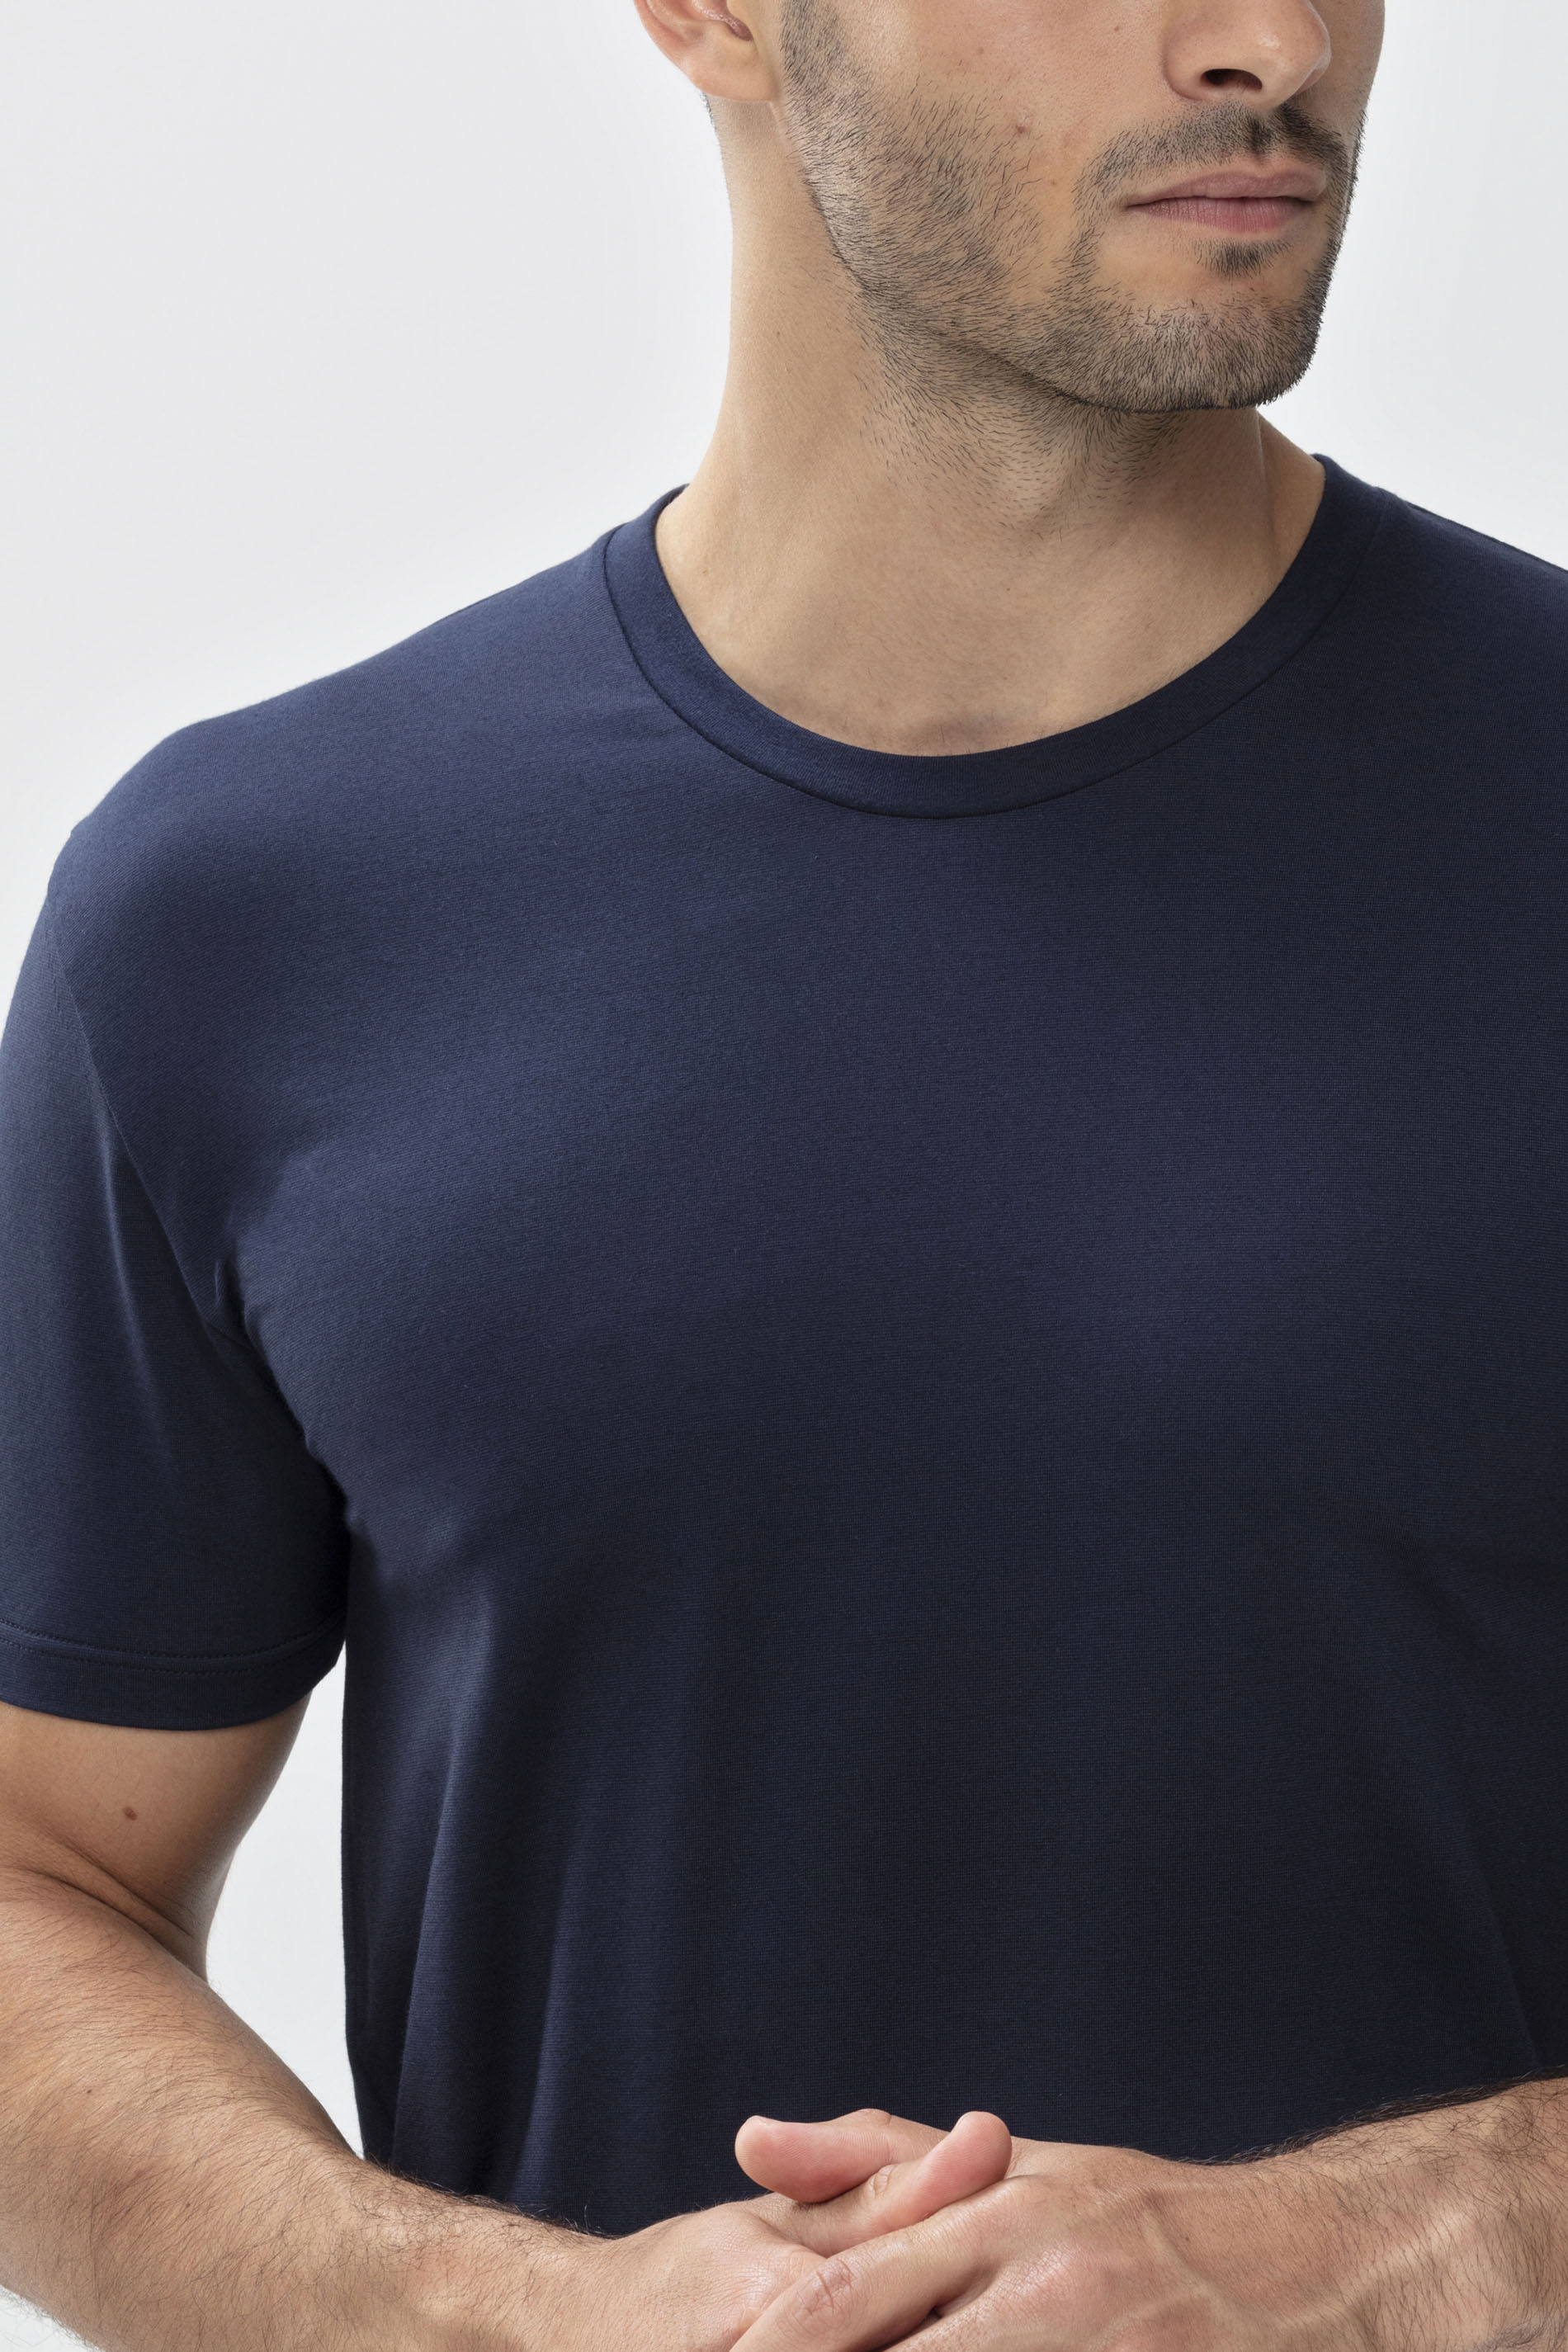 T-shirt Yacht Blue Dry Cotton Colour Detail View 01 | mey®